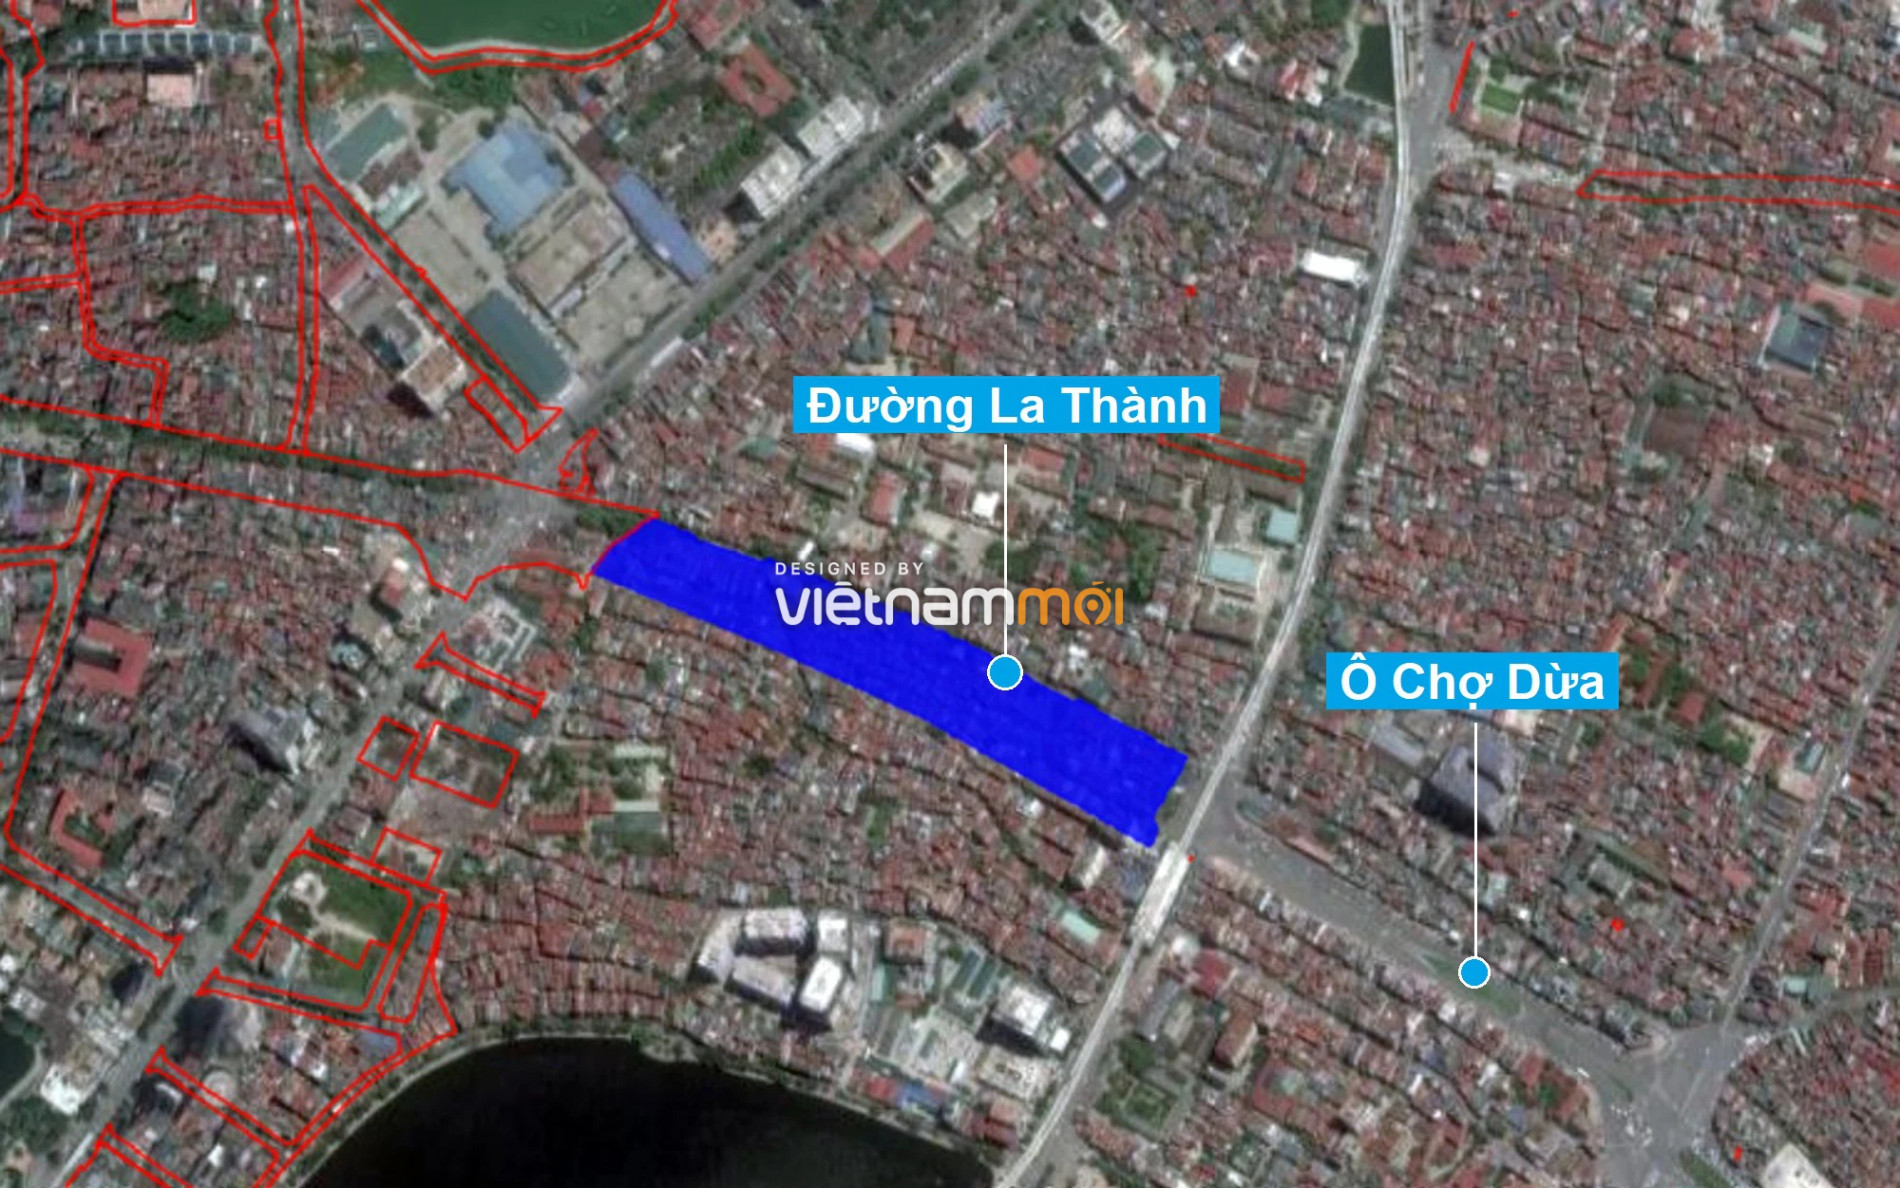 Những khu đất sắp thu hồi để mở đường ở quận Đống Đa, Hà Nội (phần 4) - Ảnh 15.